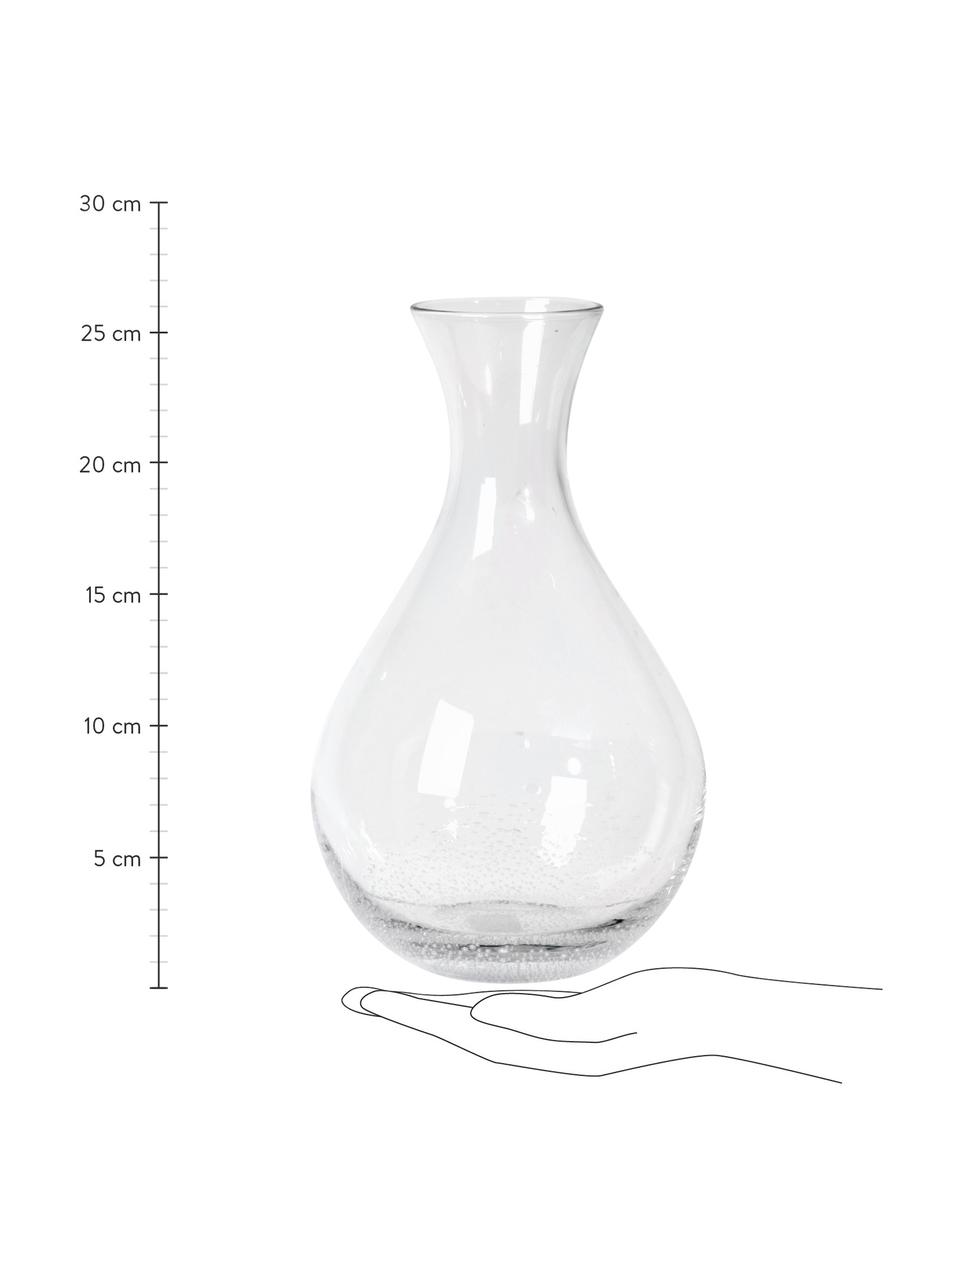 Carafe verre soufflé Bubble, 800 ml, Verre, soufflé, Transparent avec bulles d'air emprisonnées, haut. 26 cm, 800 ml